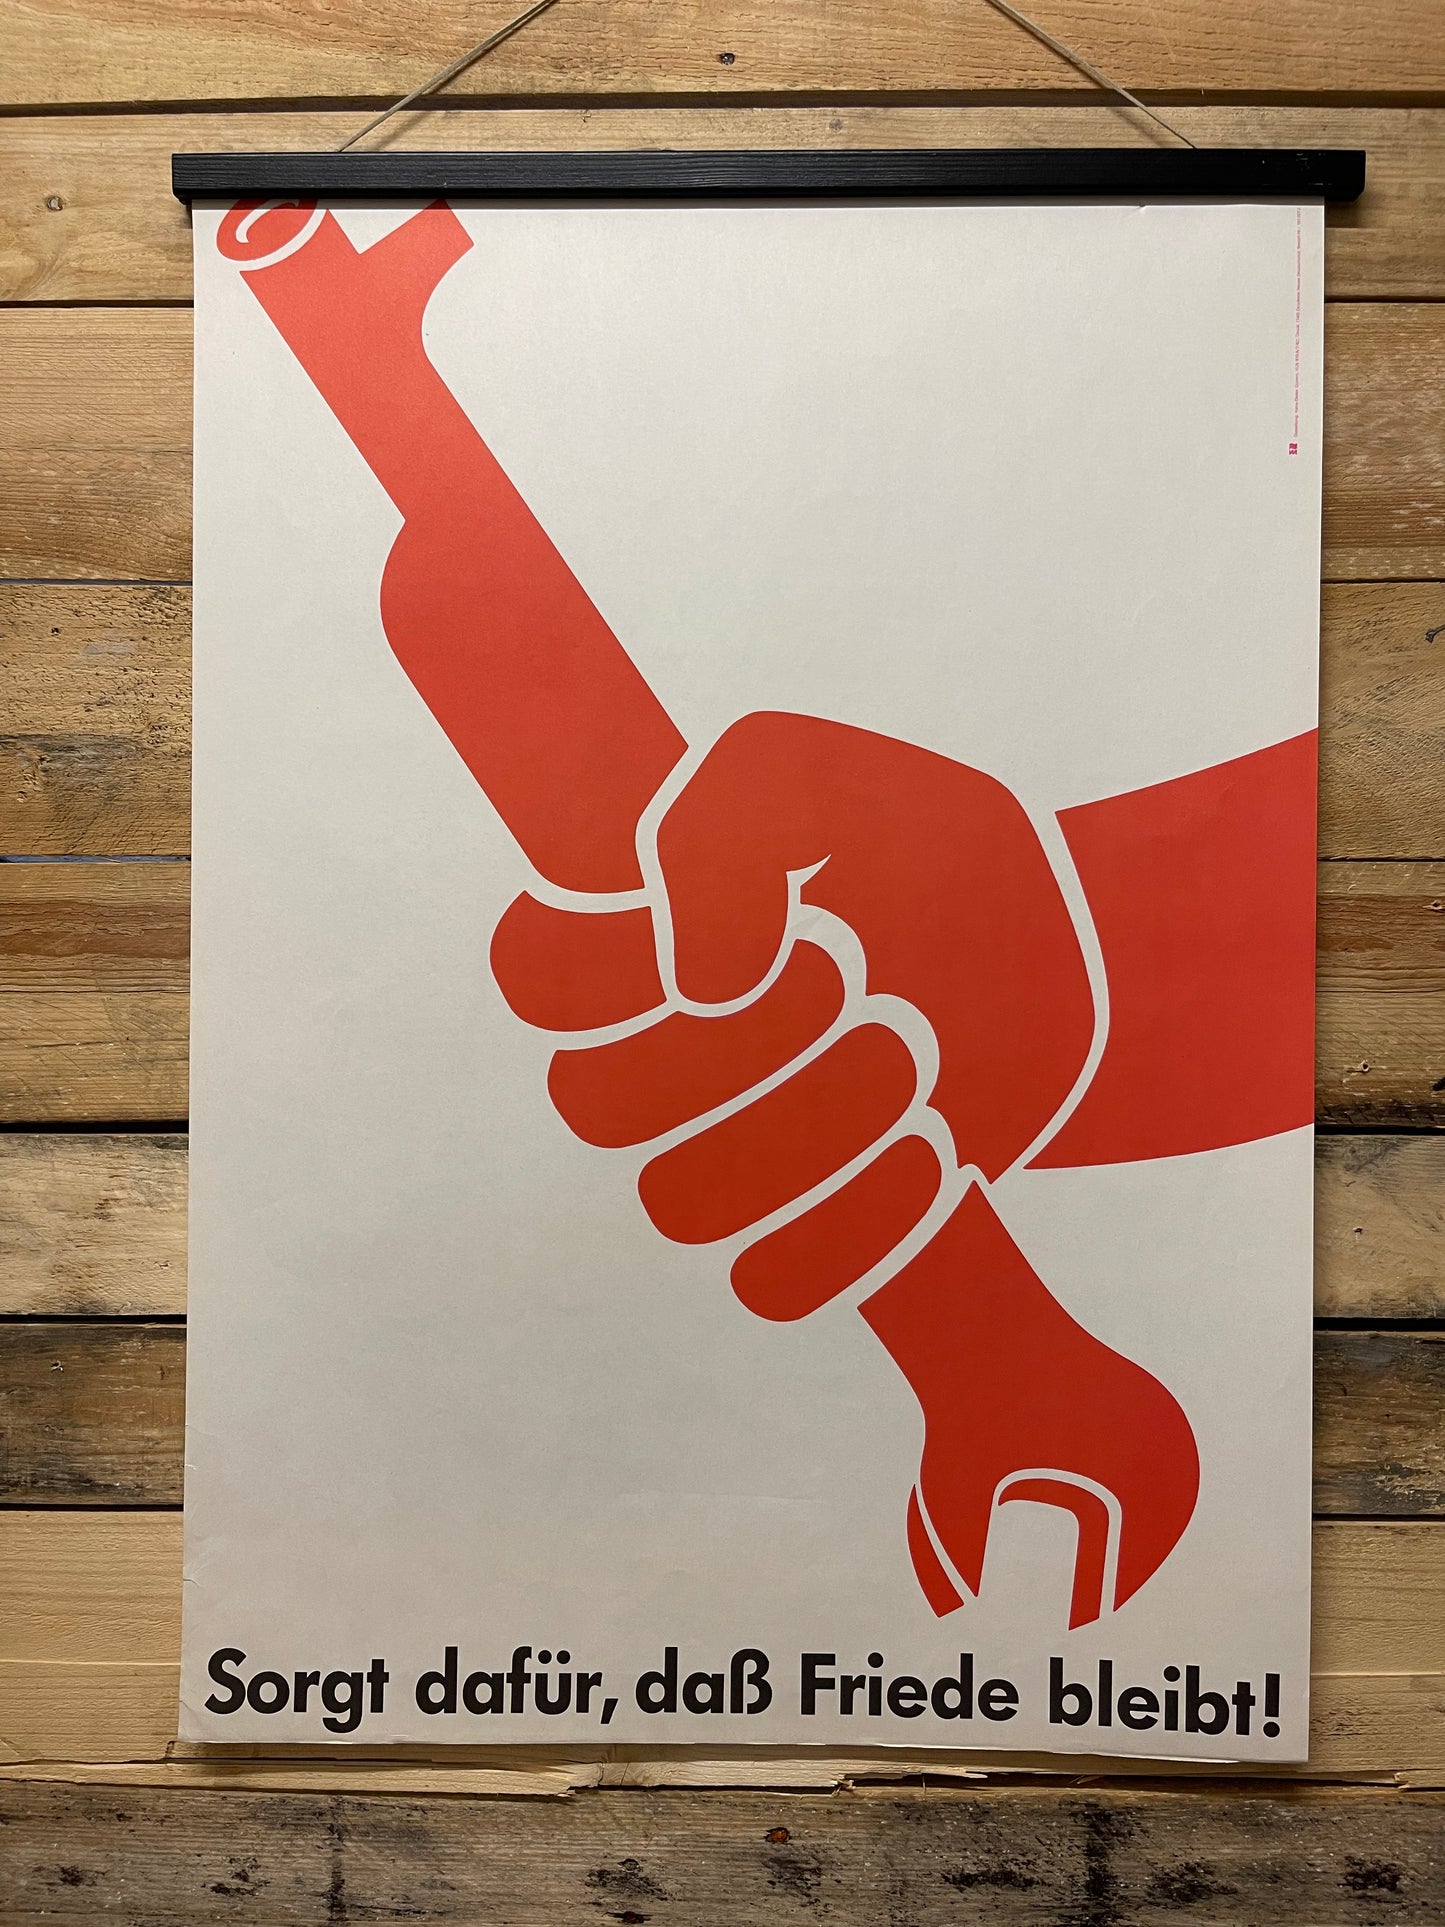 Ultra Rare 1982 DDR Propaganda Poster By Hans-Dieter Gumm